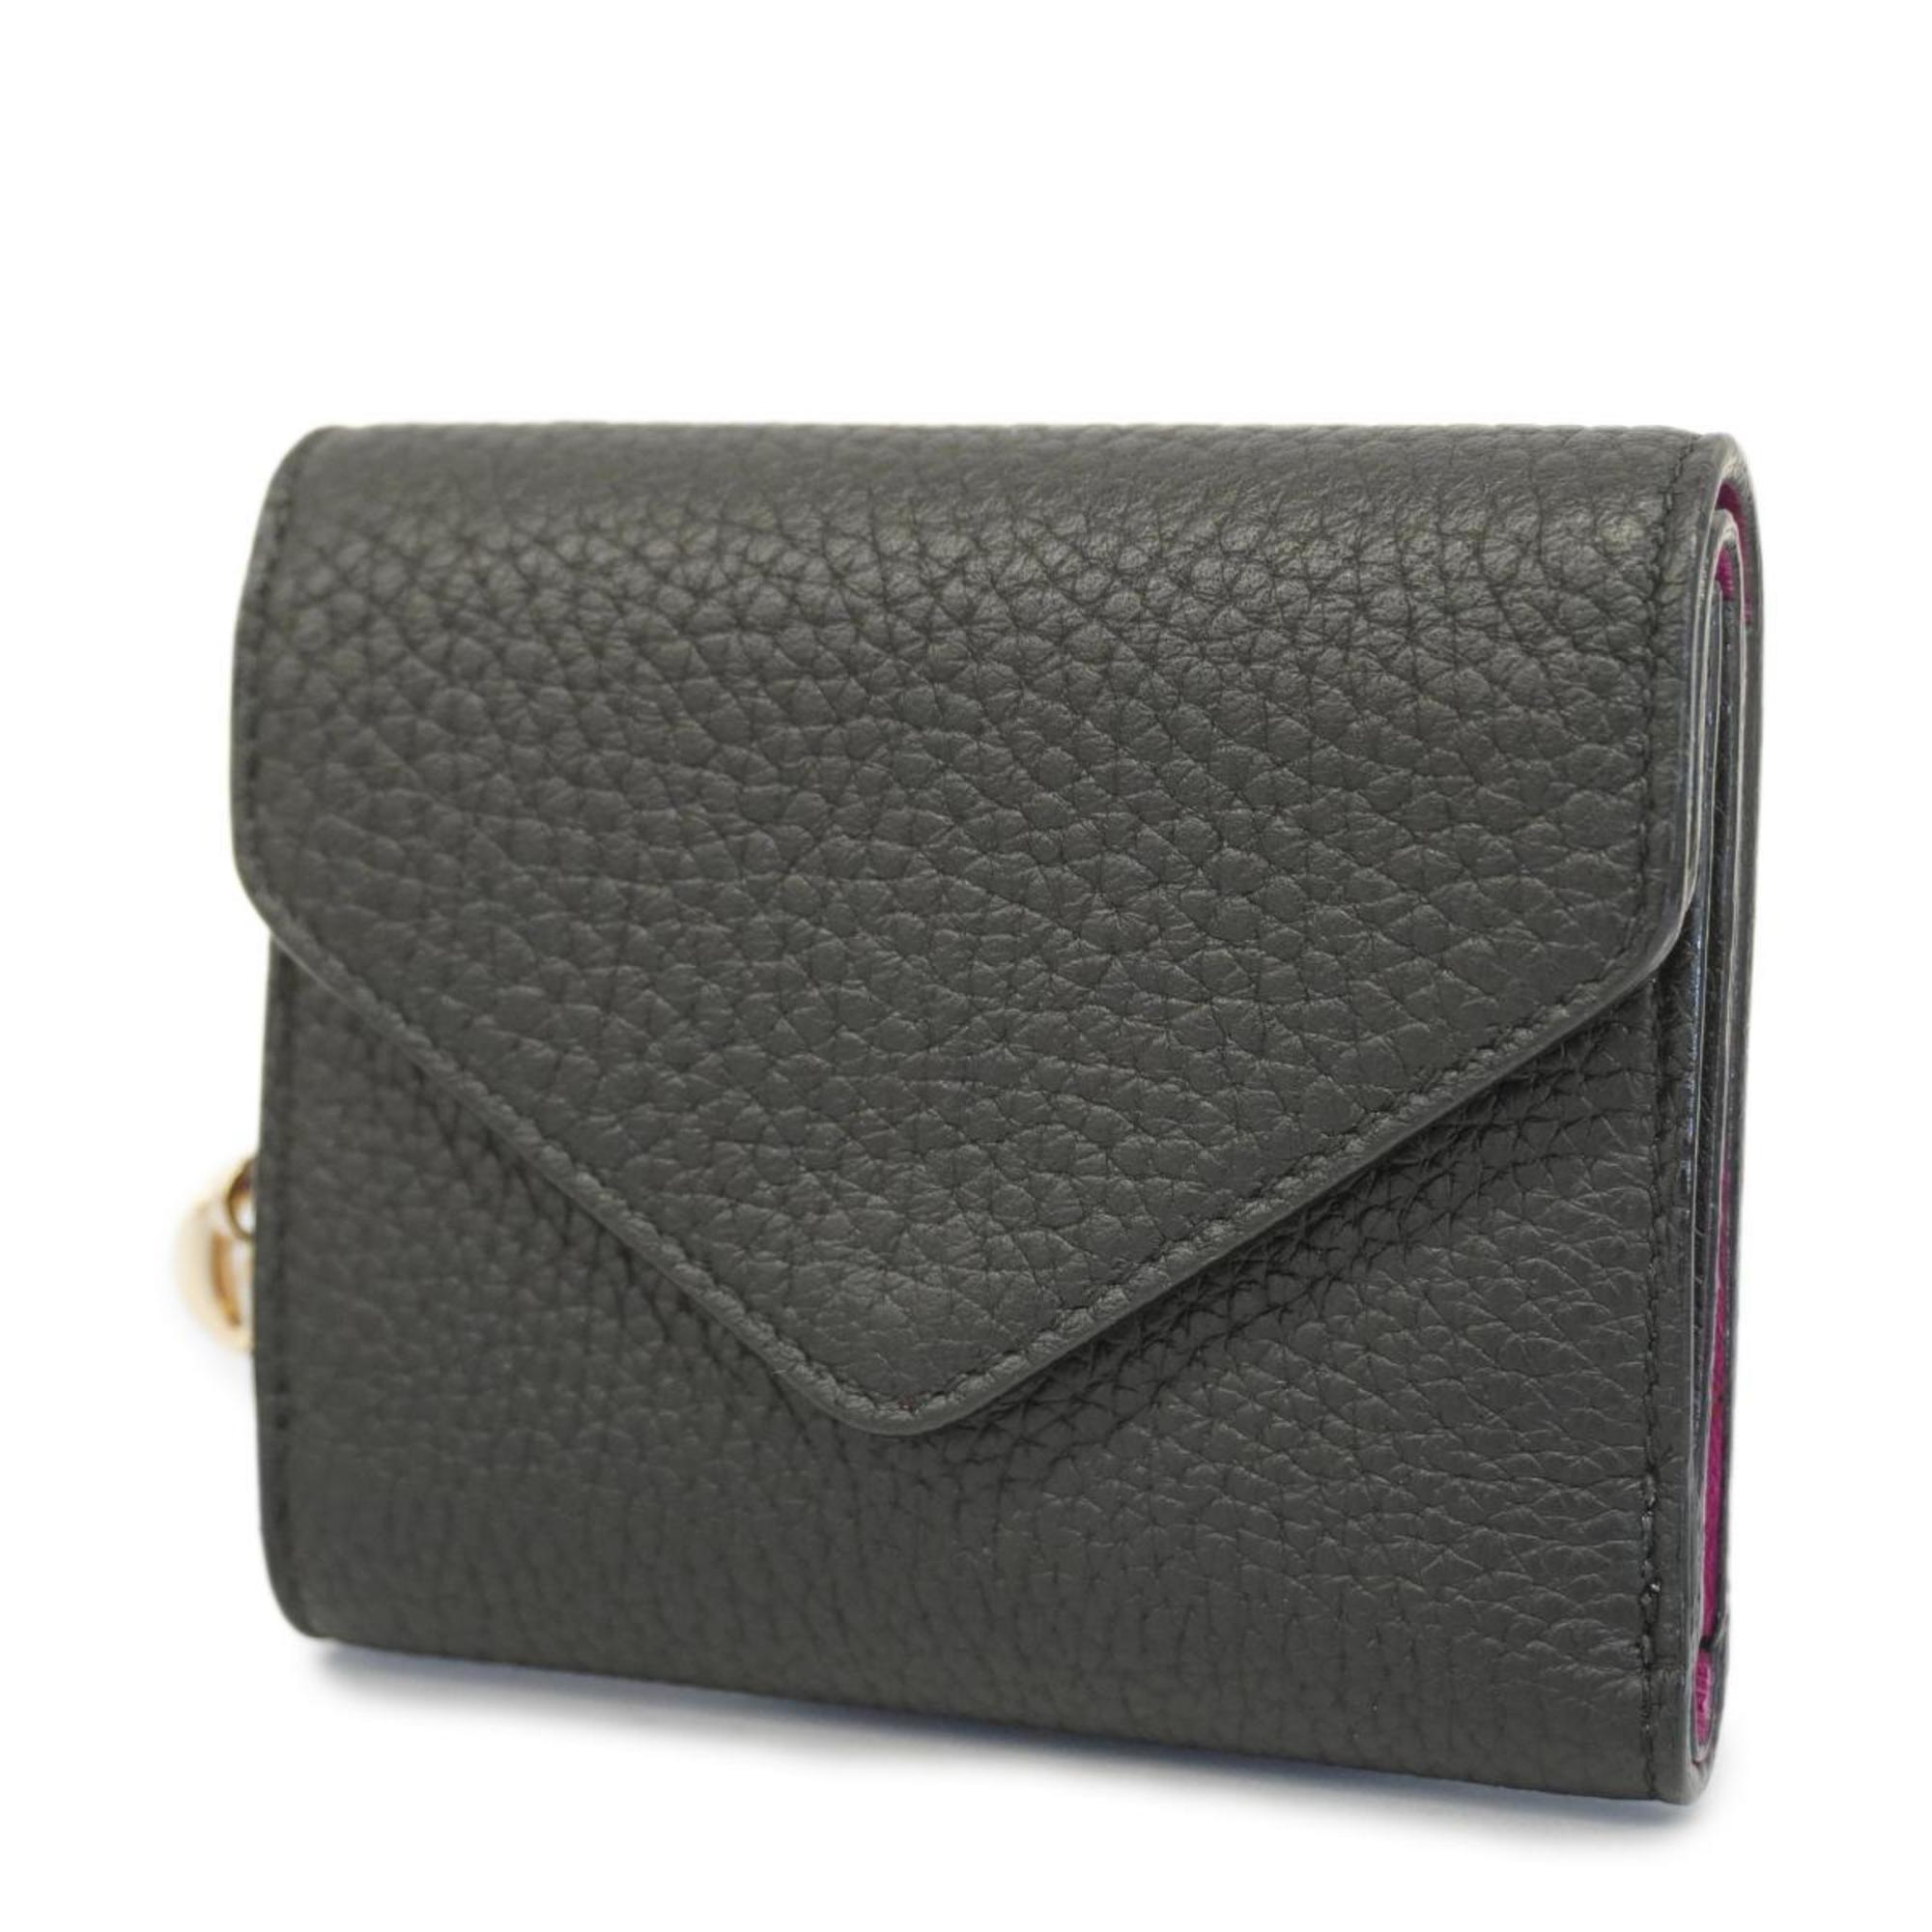 【美品】Dior 三つ折財布 レザー ブラックカラーブラック